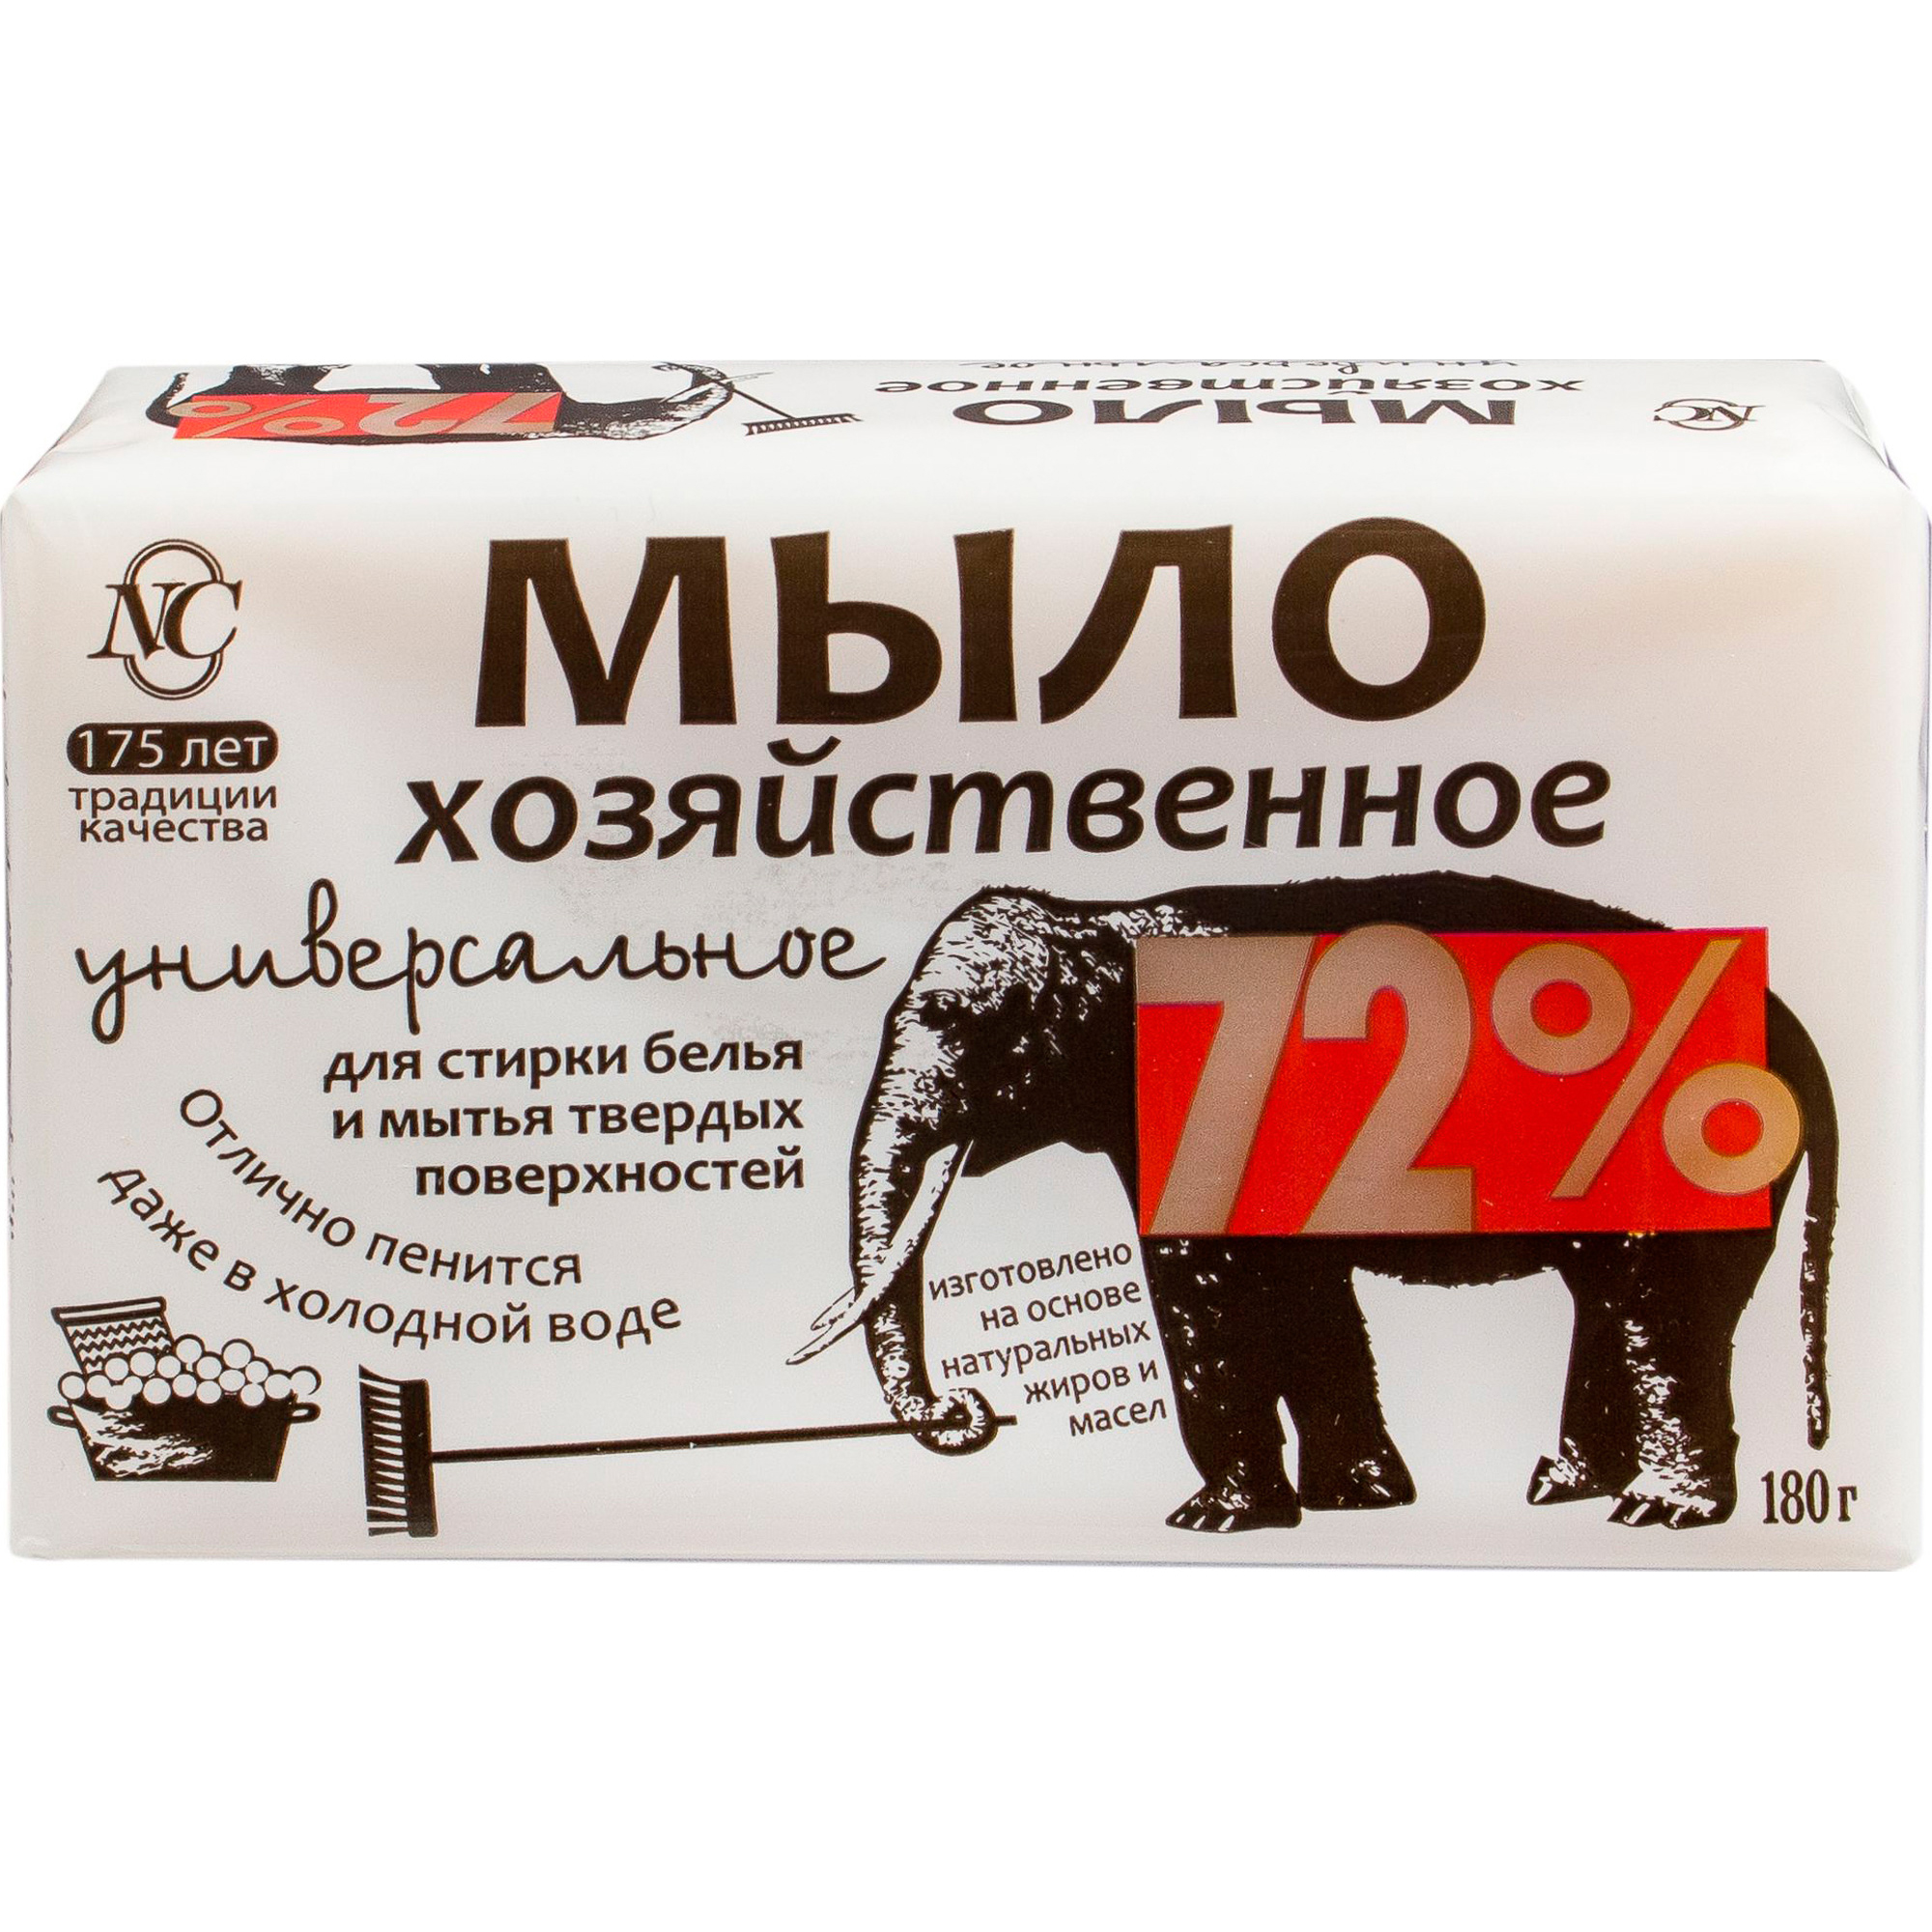 Хозяйственное мыло Невская Косметика Универсальное 72% 180 г мыло хозяйственное 72% premium 100 г универсальное